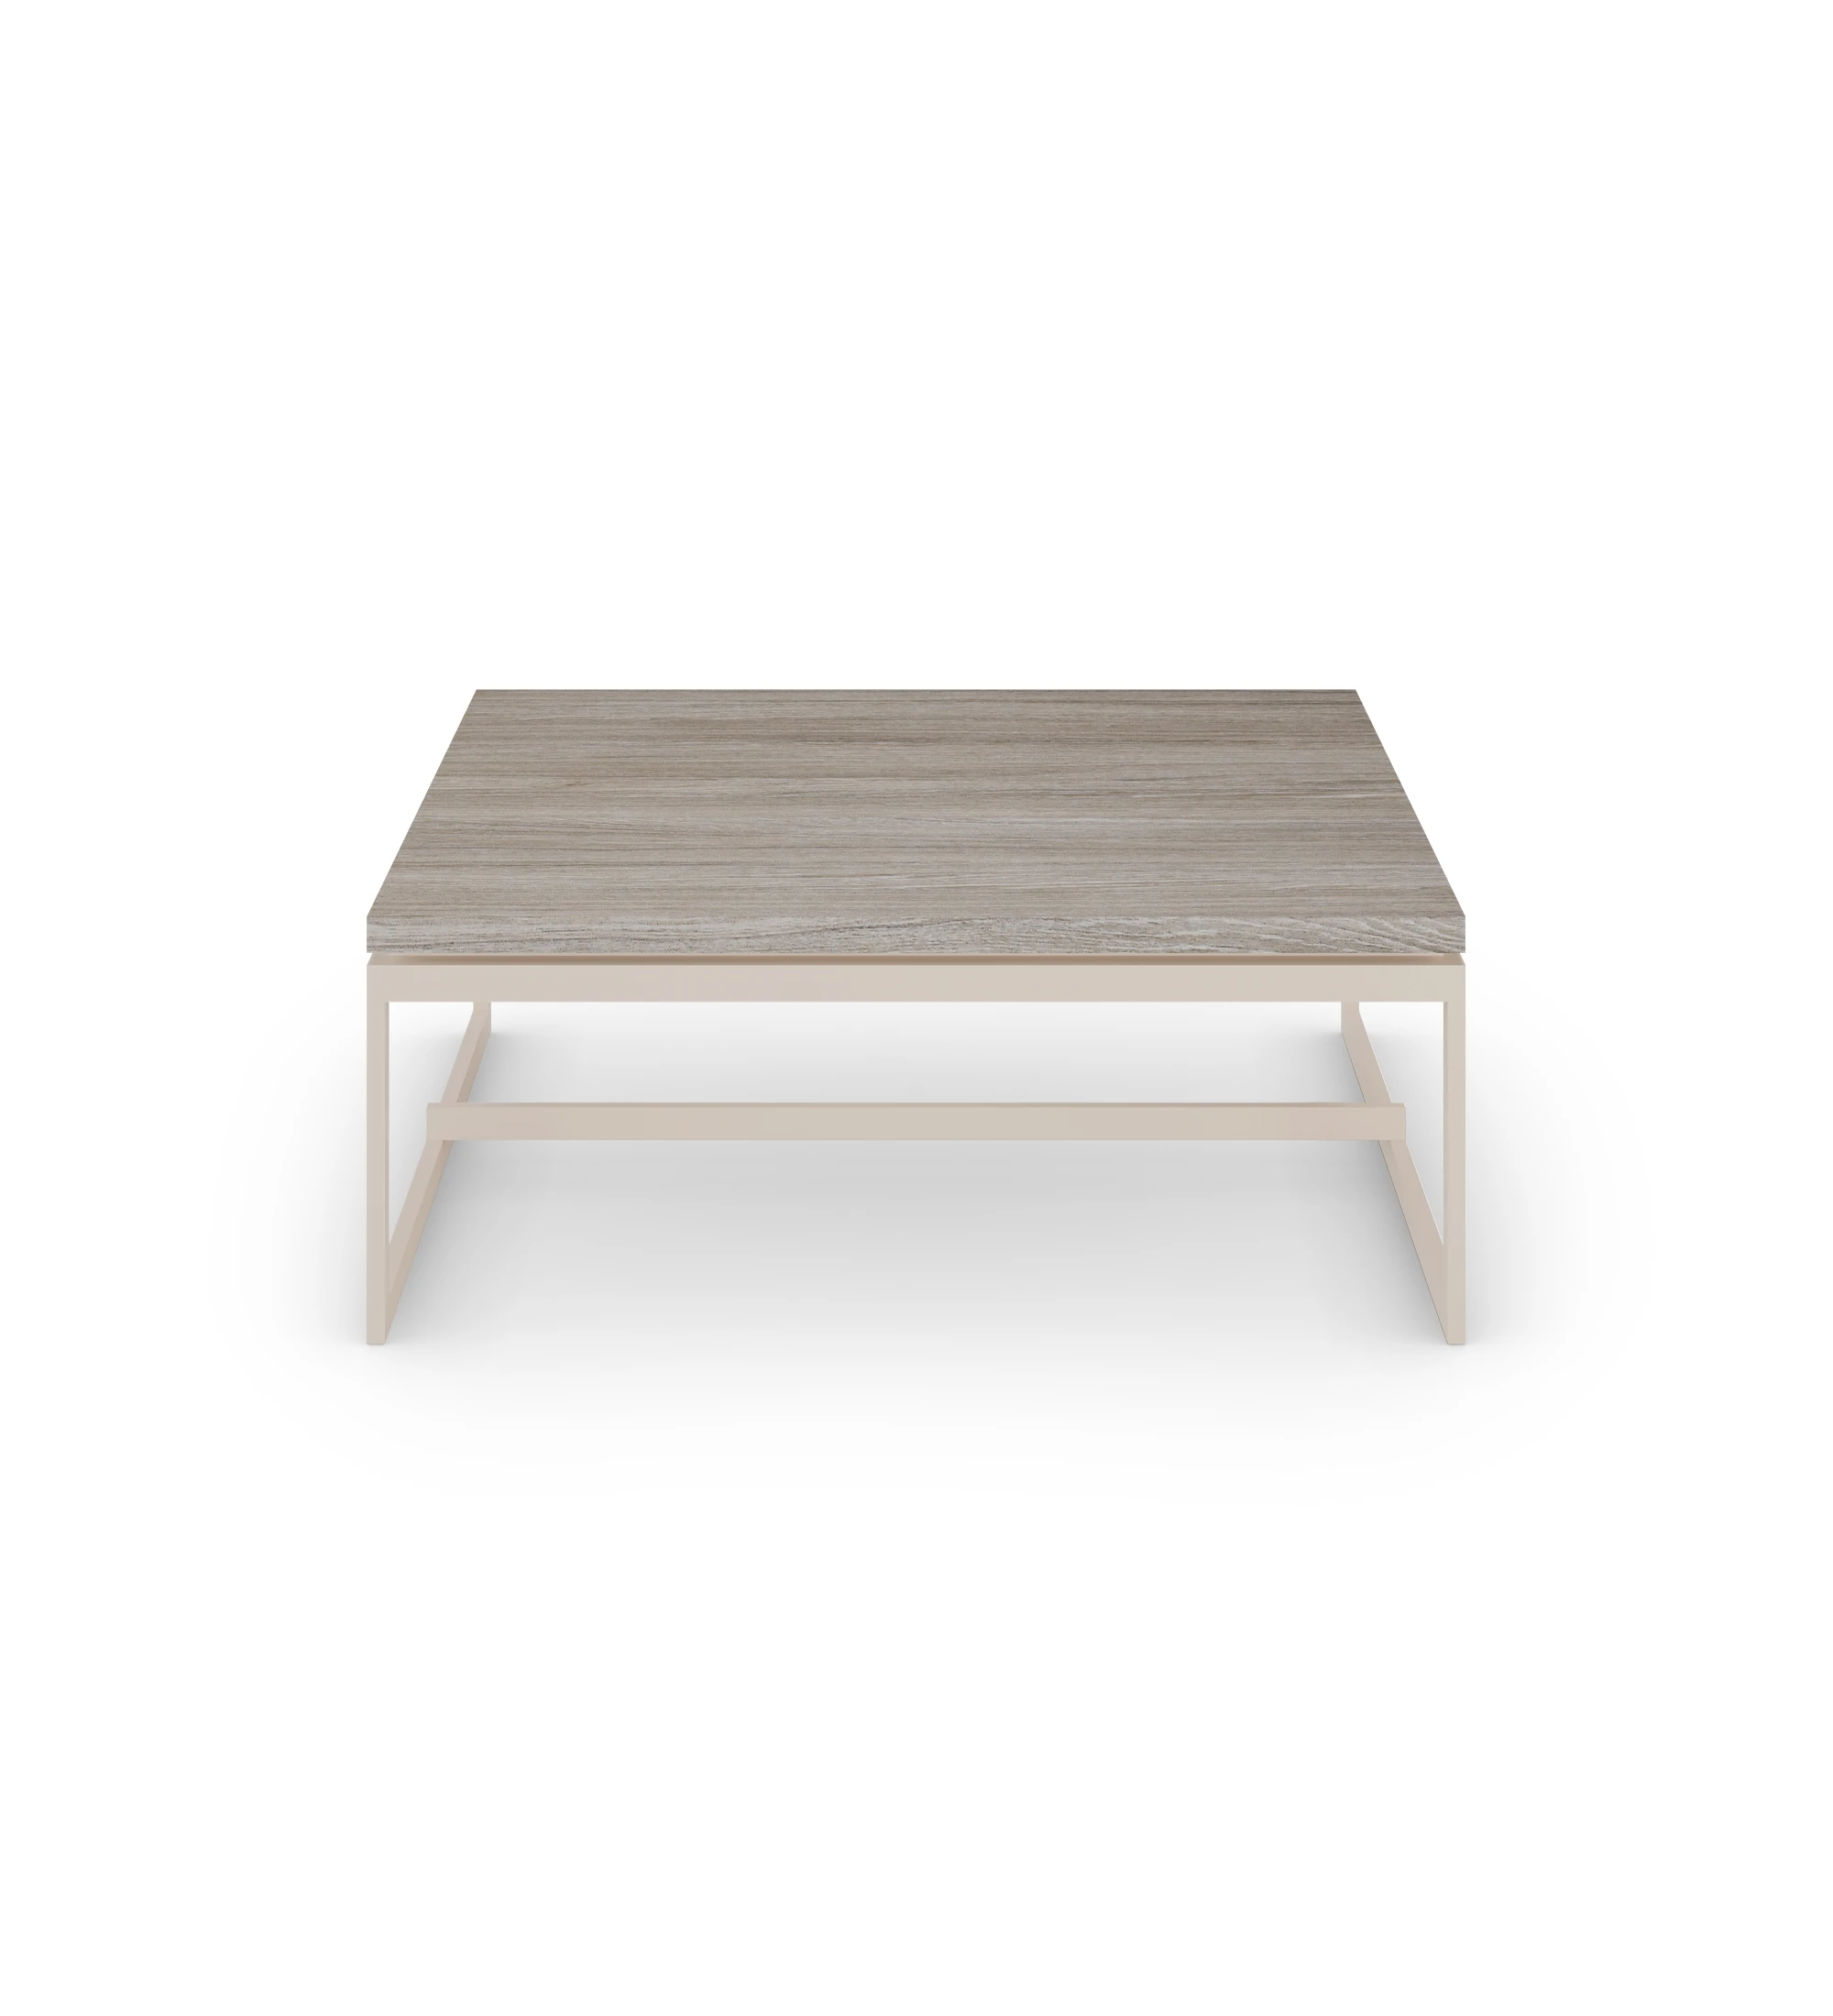 Table basse Chicago carrée, plateau en chêne décapé, pieds en métal laqué perle, 90 x 90 cm.